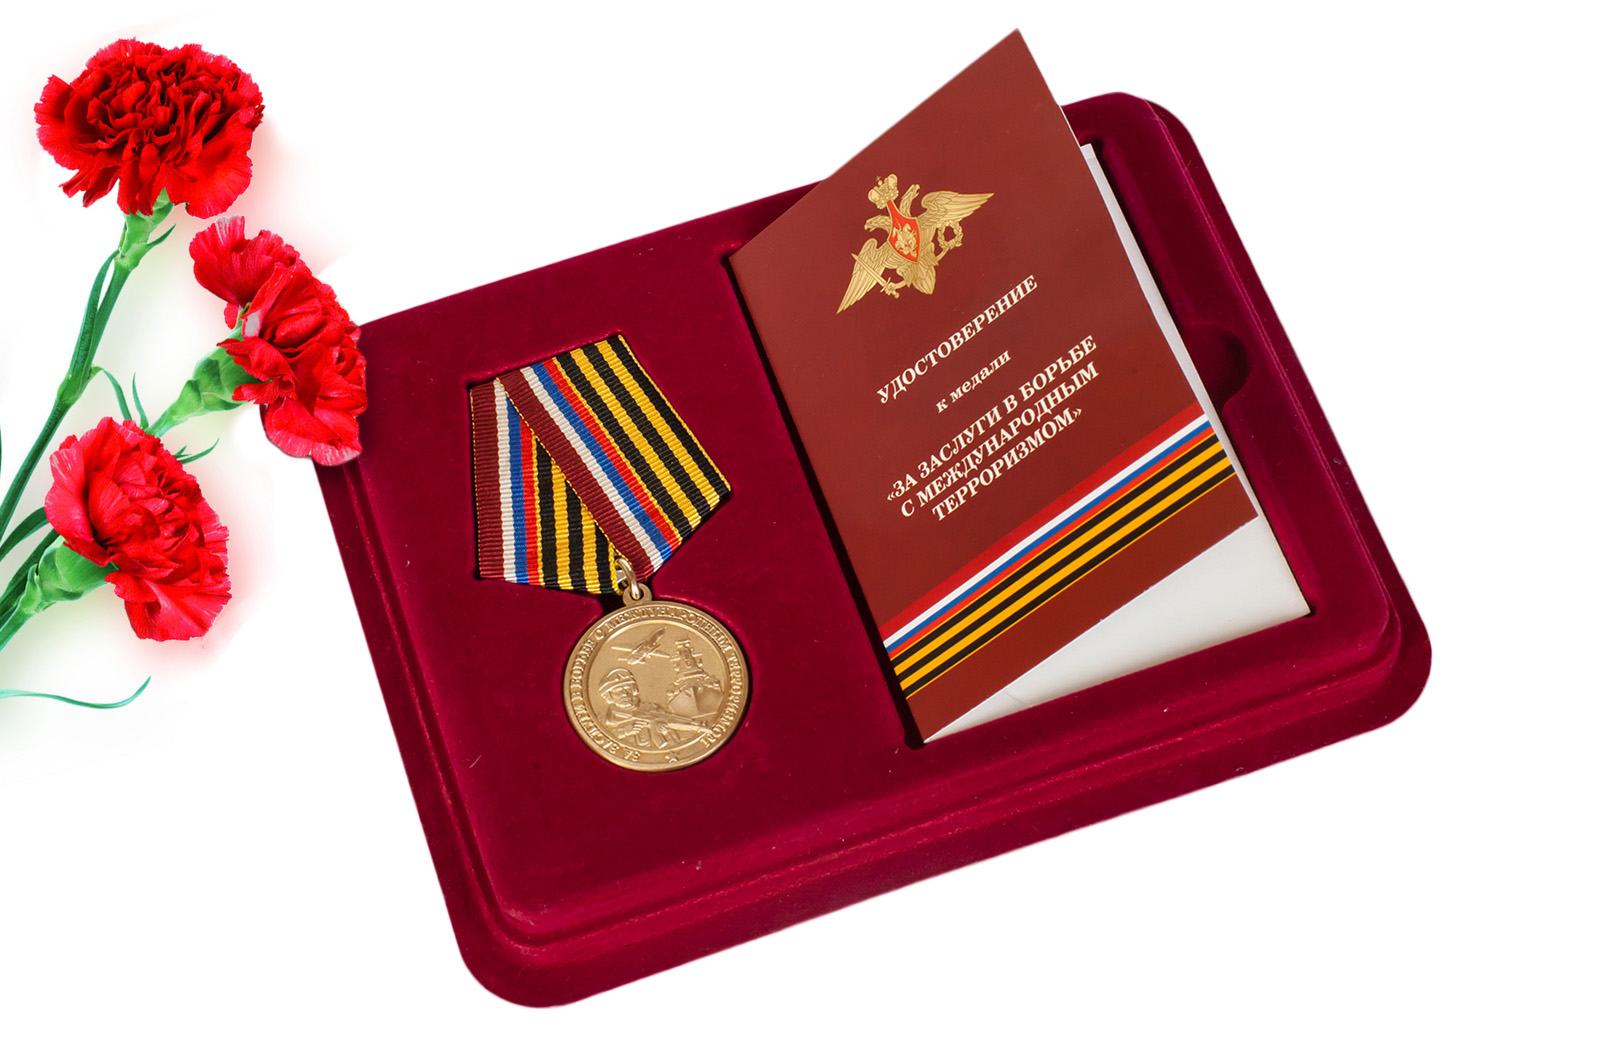 Купить медаль "За заслуги в борьбе с международным терроризмом" с удостоверением